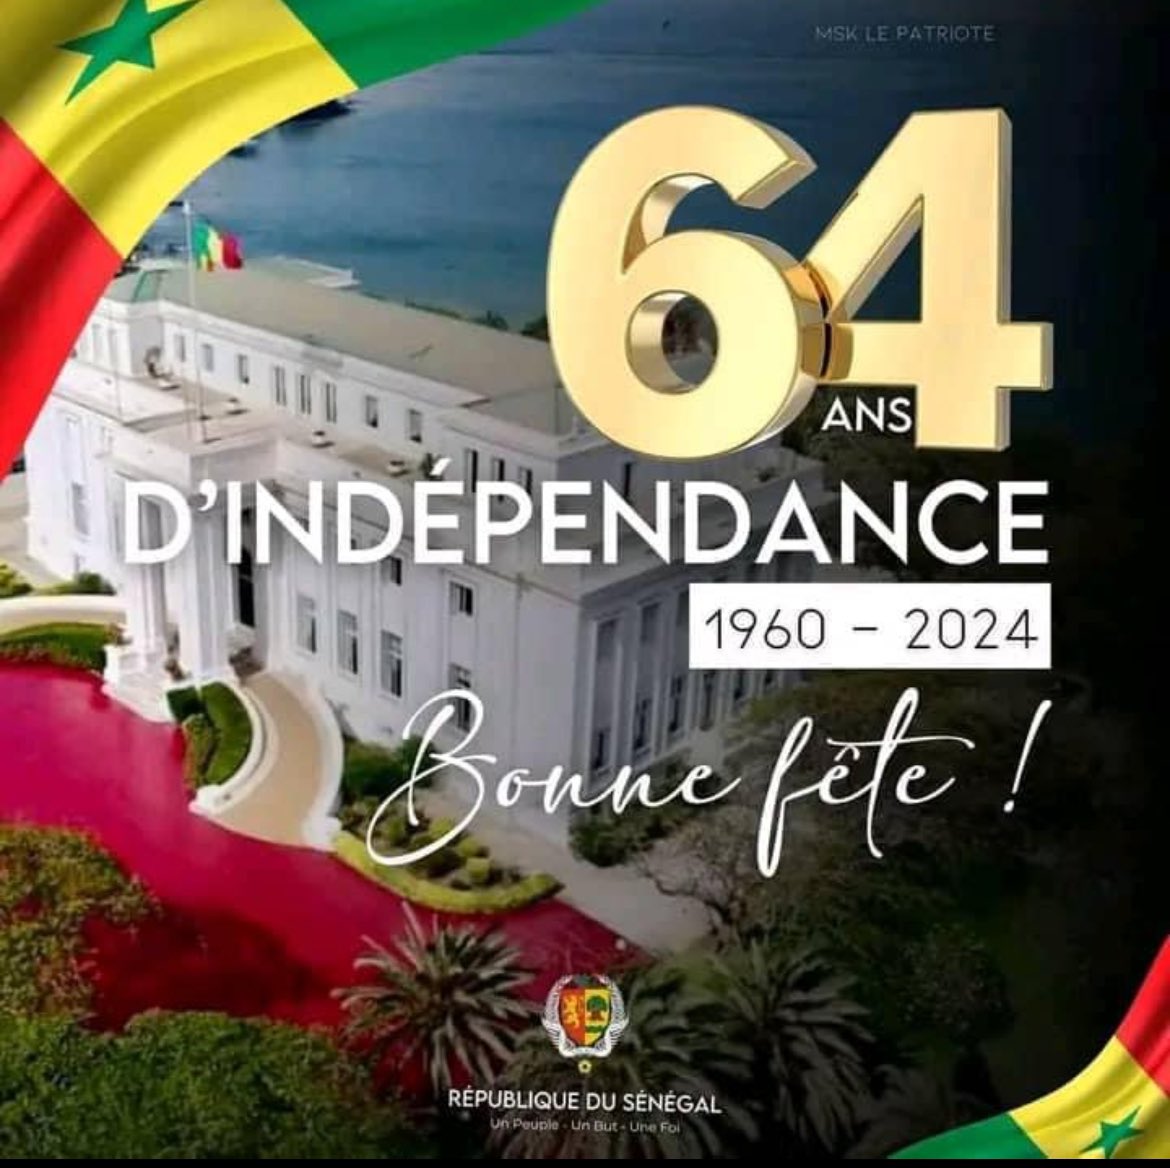 Bonne fête au peuple sénégalais Victorieux